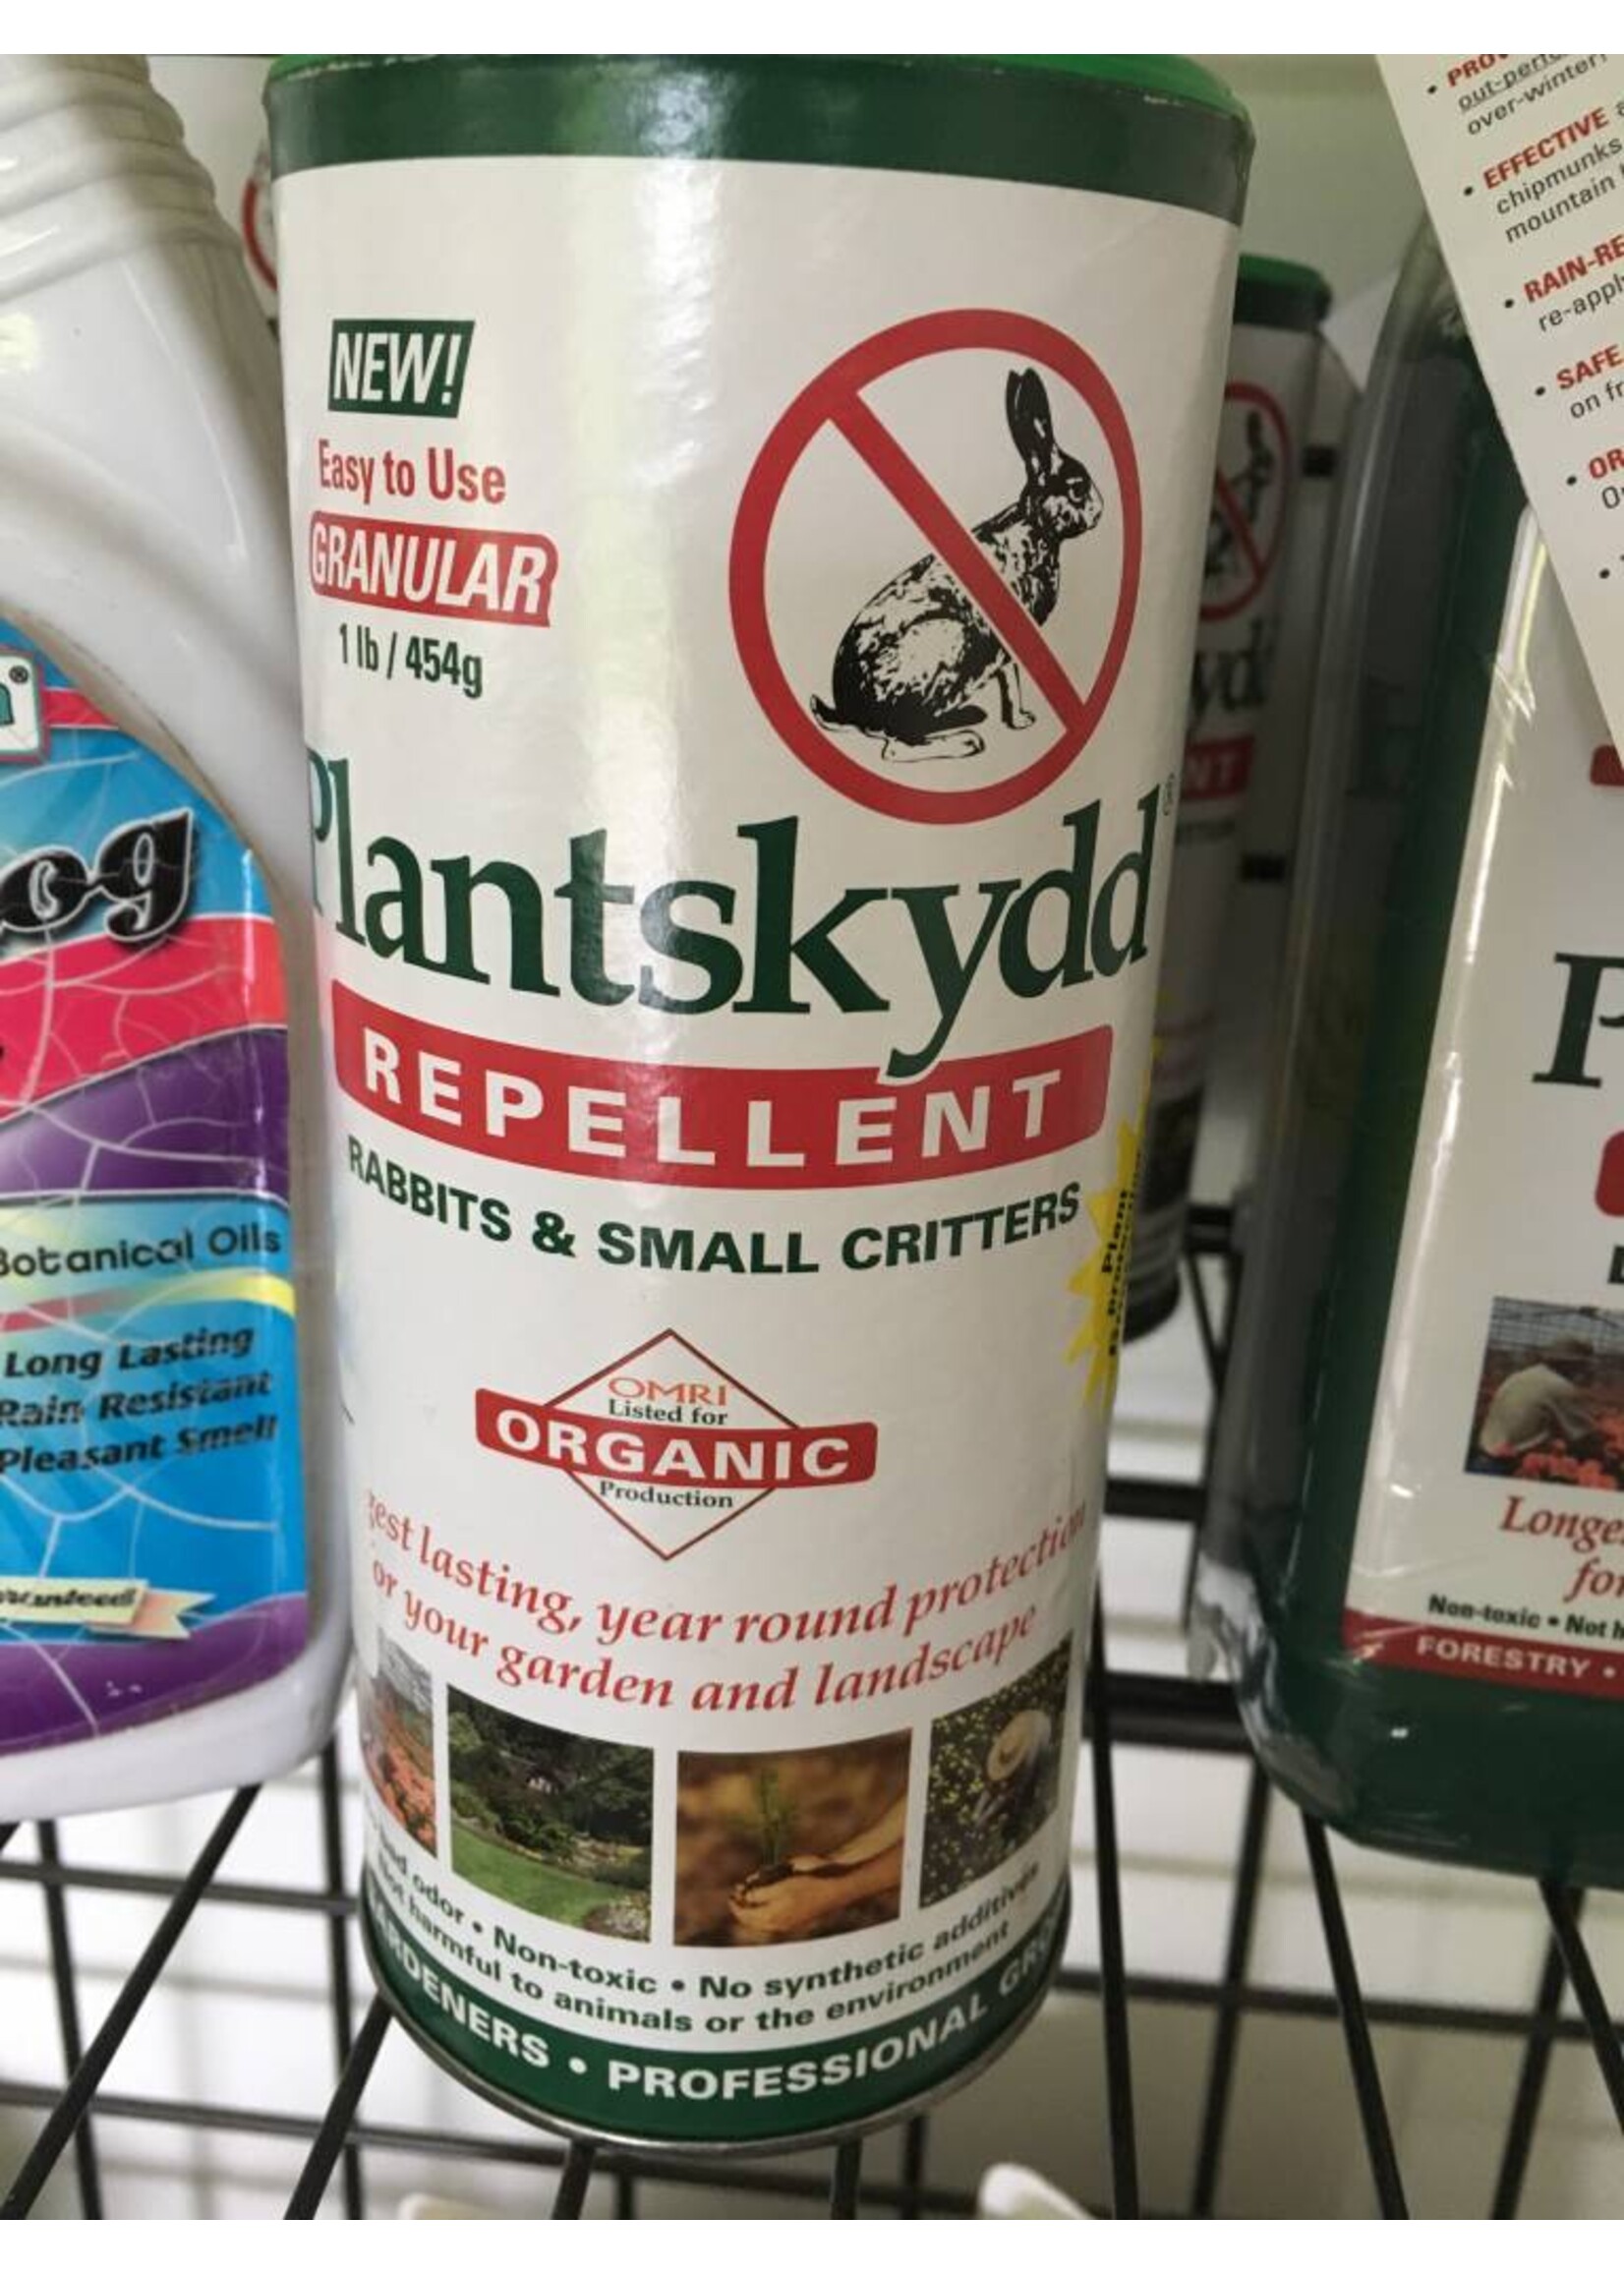 Plantskydd Repellent Granular 1 lb